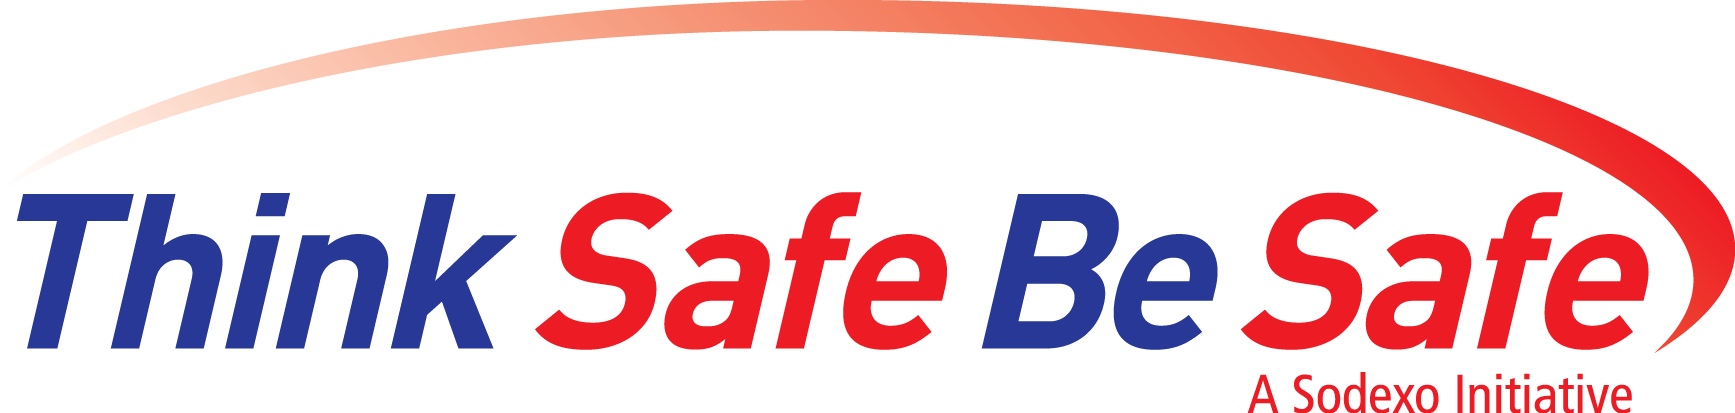 Think Safe Be Safe logo